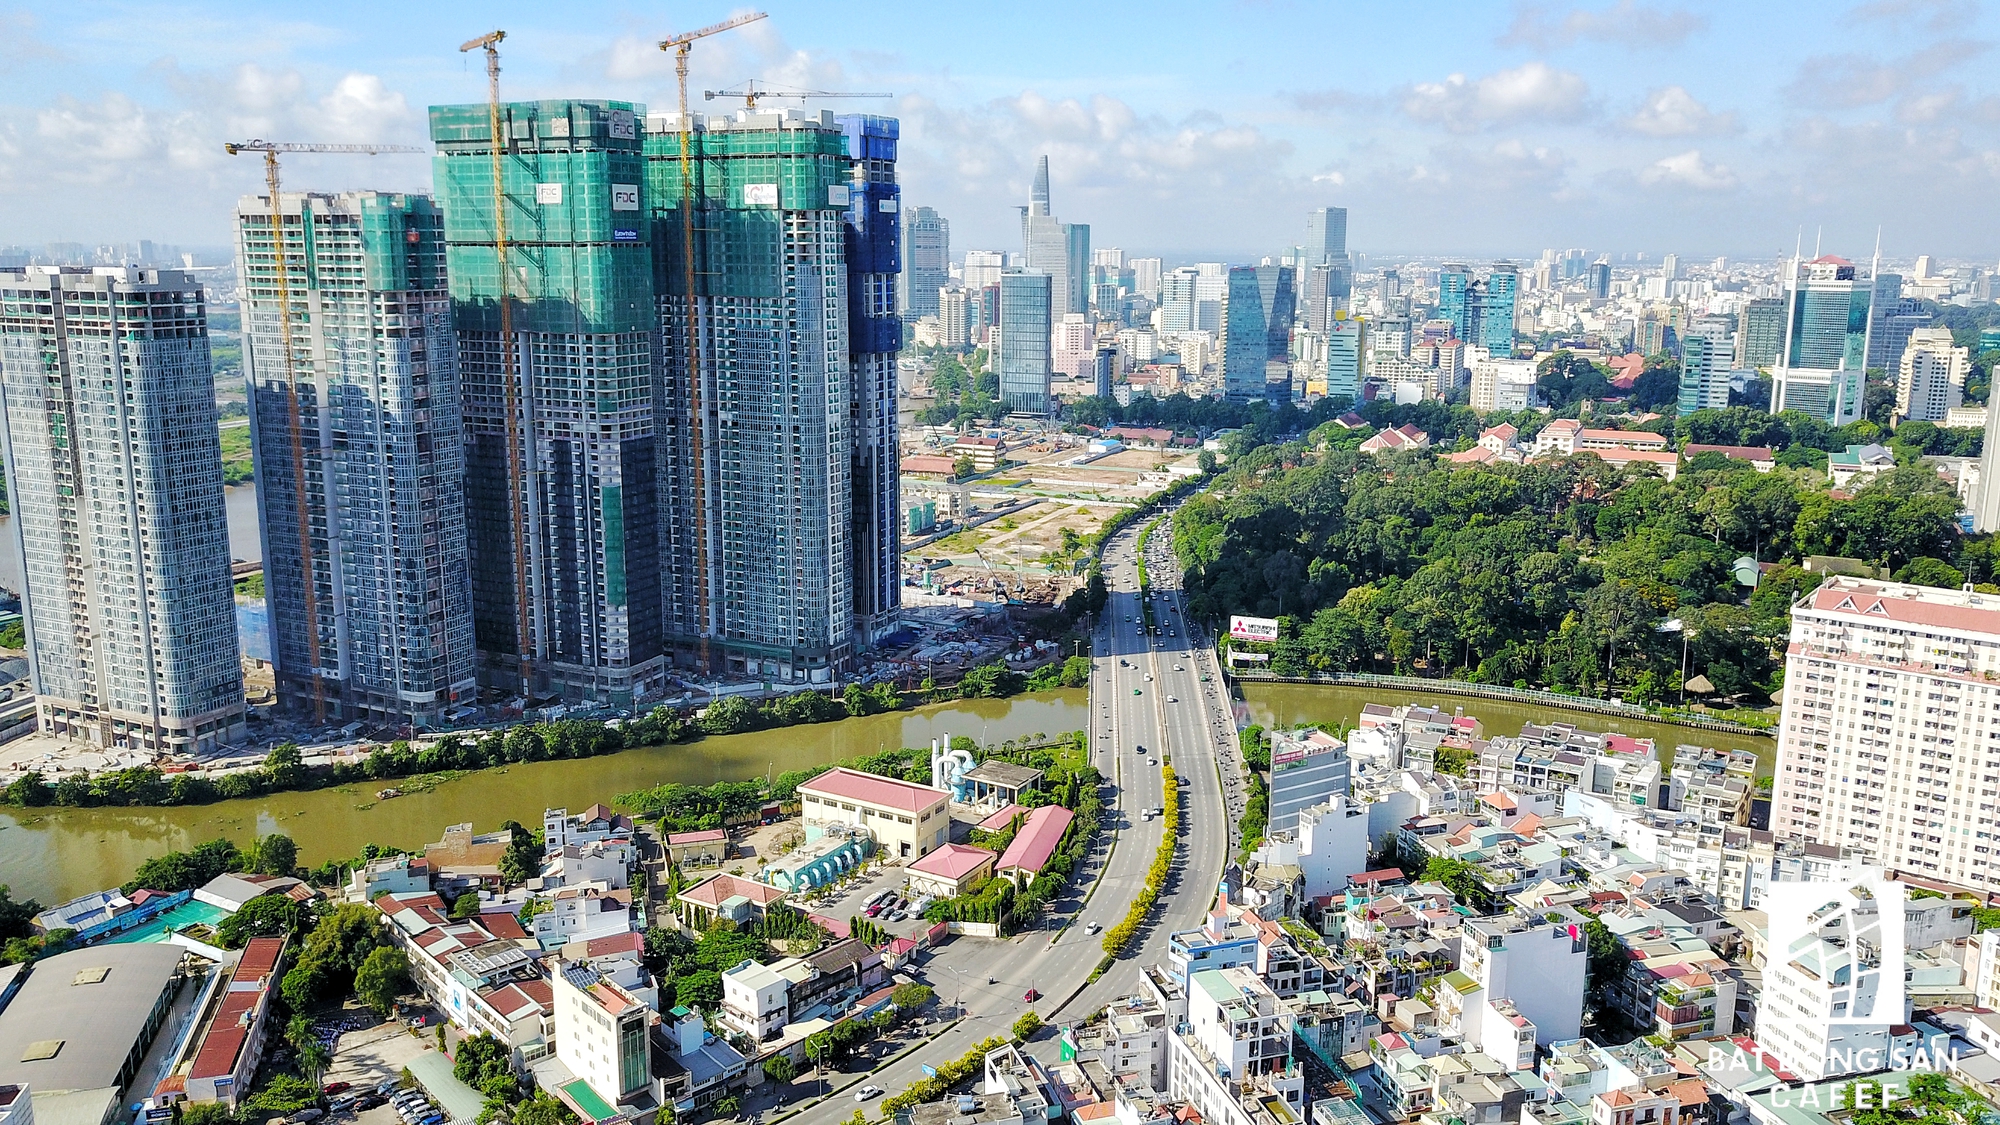 
Dọc hai bờ sông Sài Gòn có nhiều dự án đang được triển khai xây dựng, ngày một làm thay đổi diện mạo đô thị thành phố.

 
